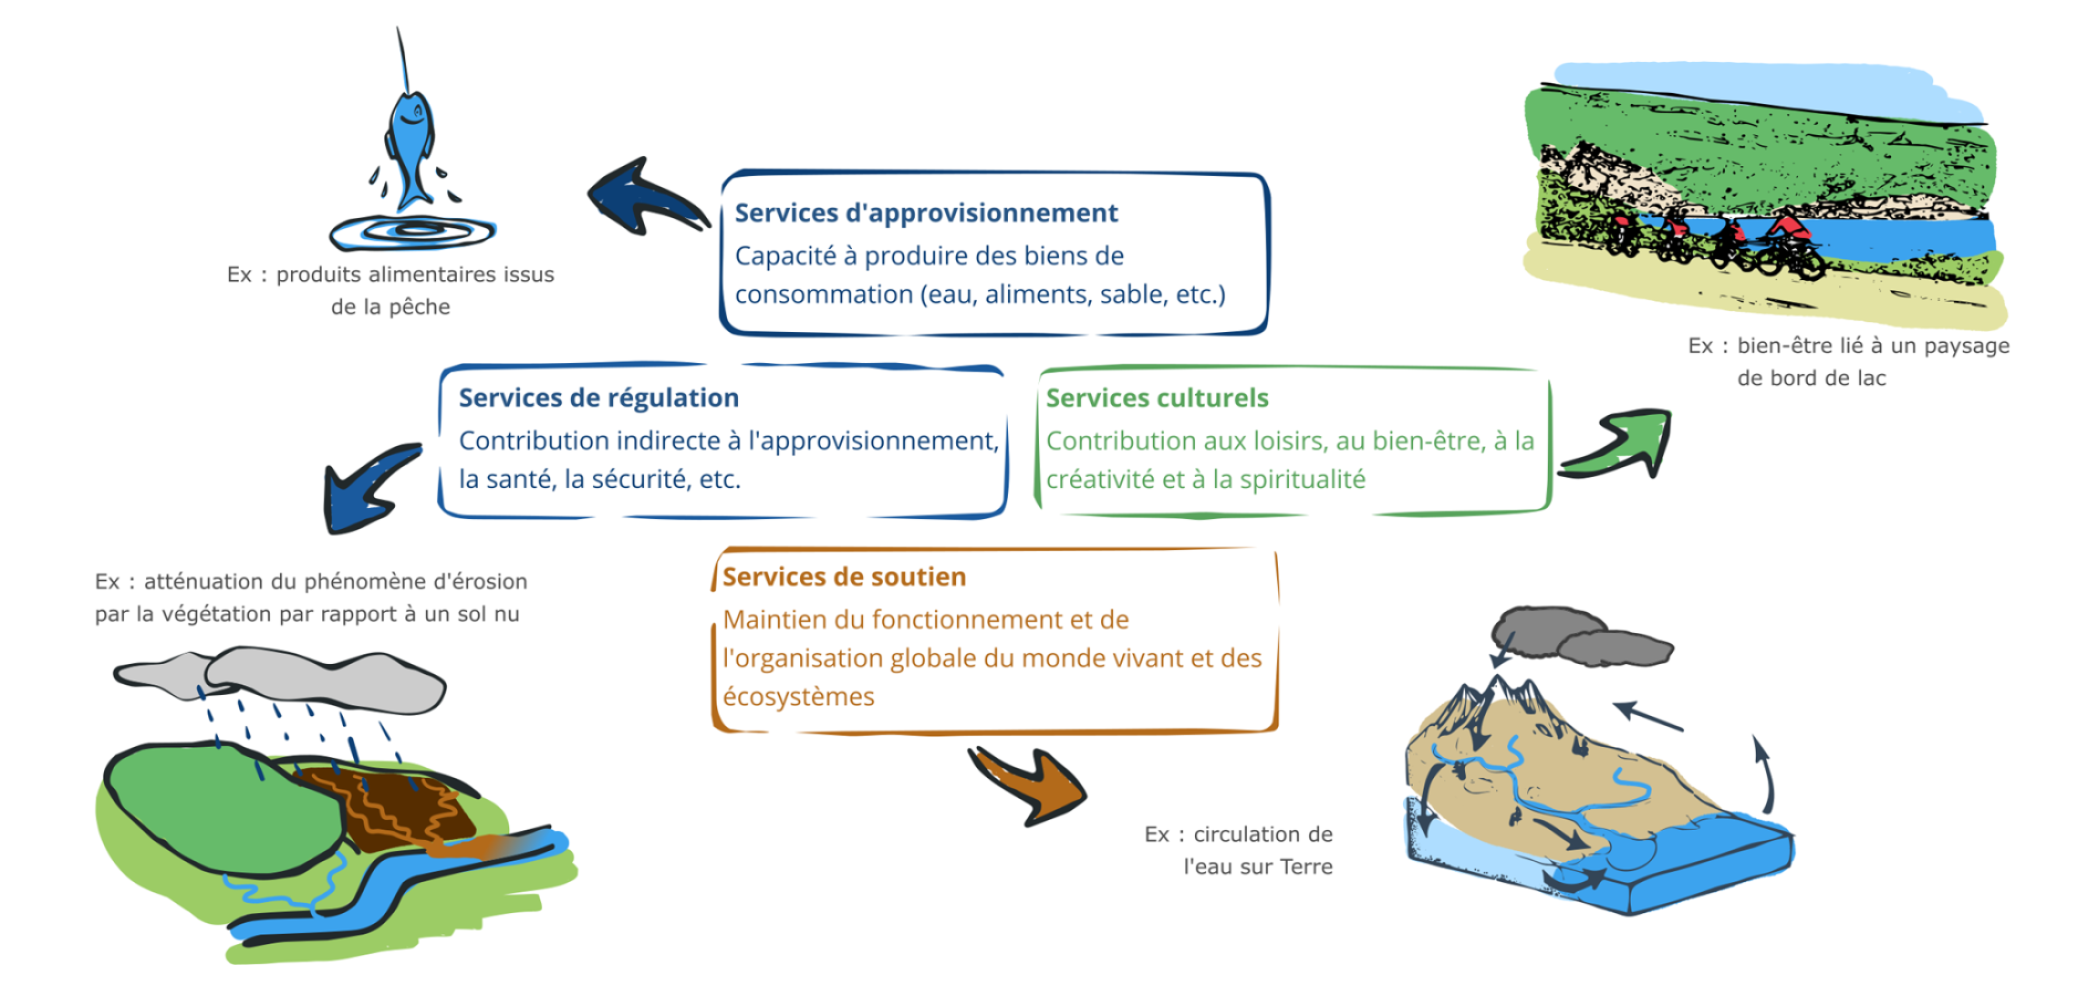 Les services écologiques ou écosystémiques : bénéfices issus de la biodiversité et des écosystèmes